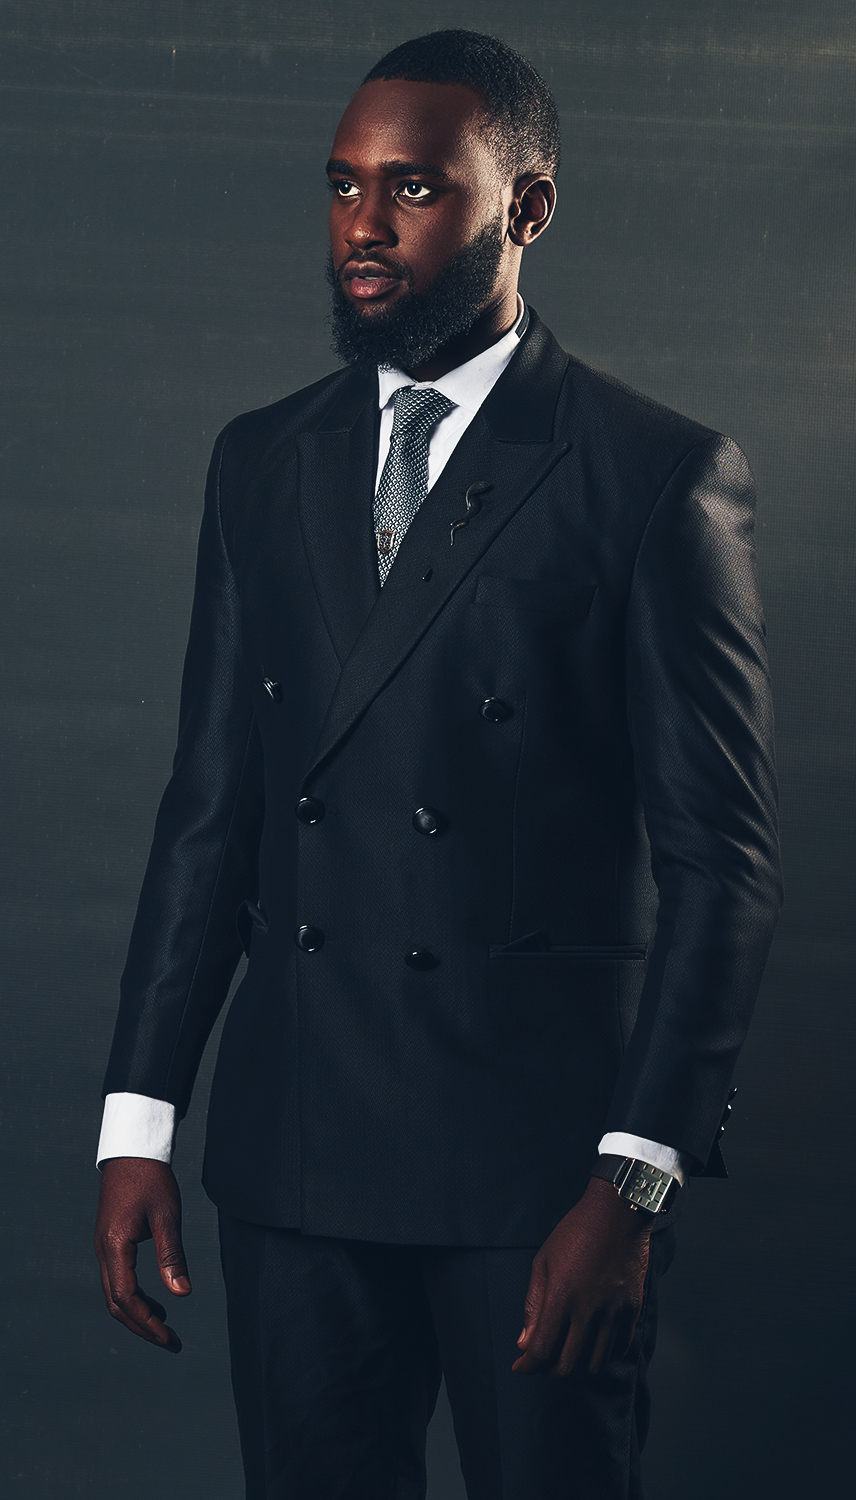 suit suit and tie mens fashion classic man studio portrait corporate headshot businessman